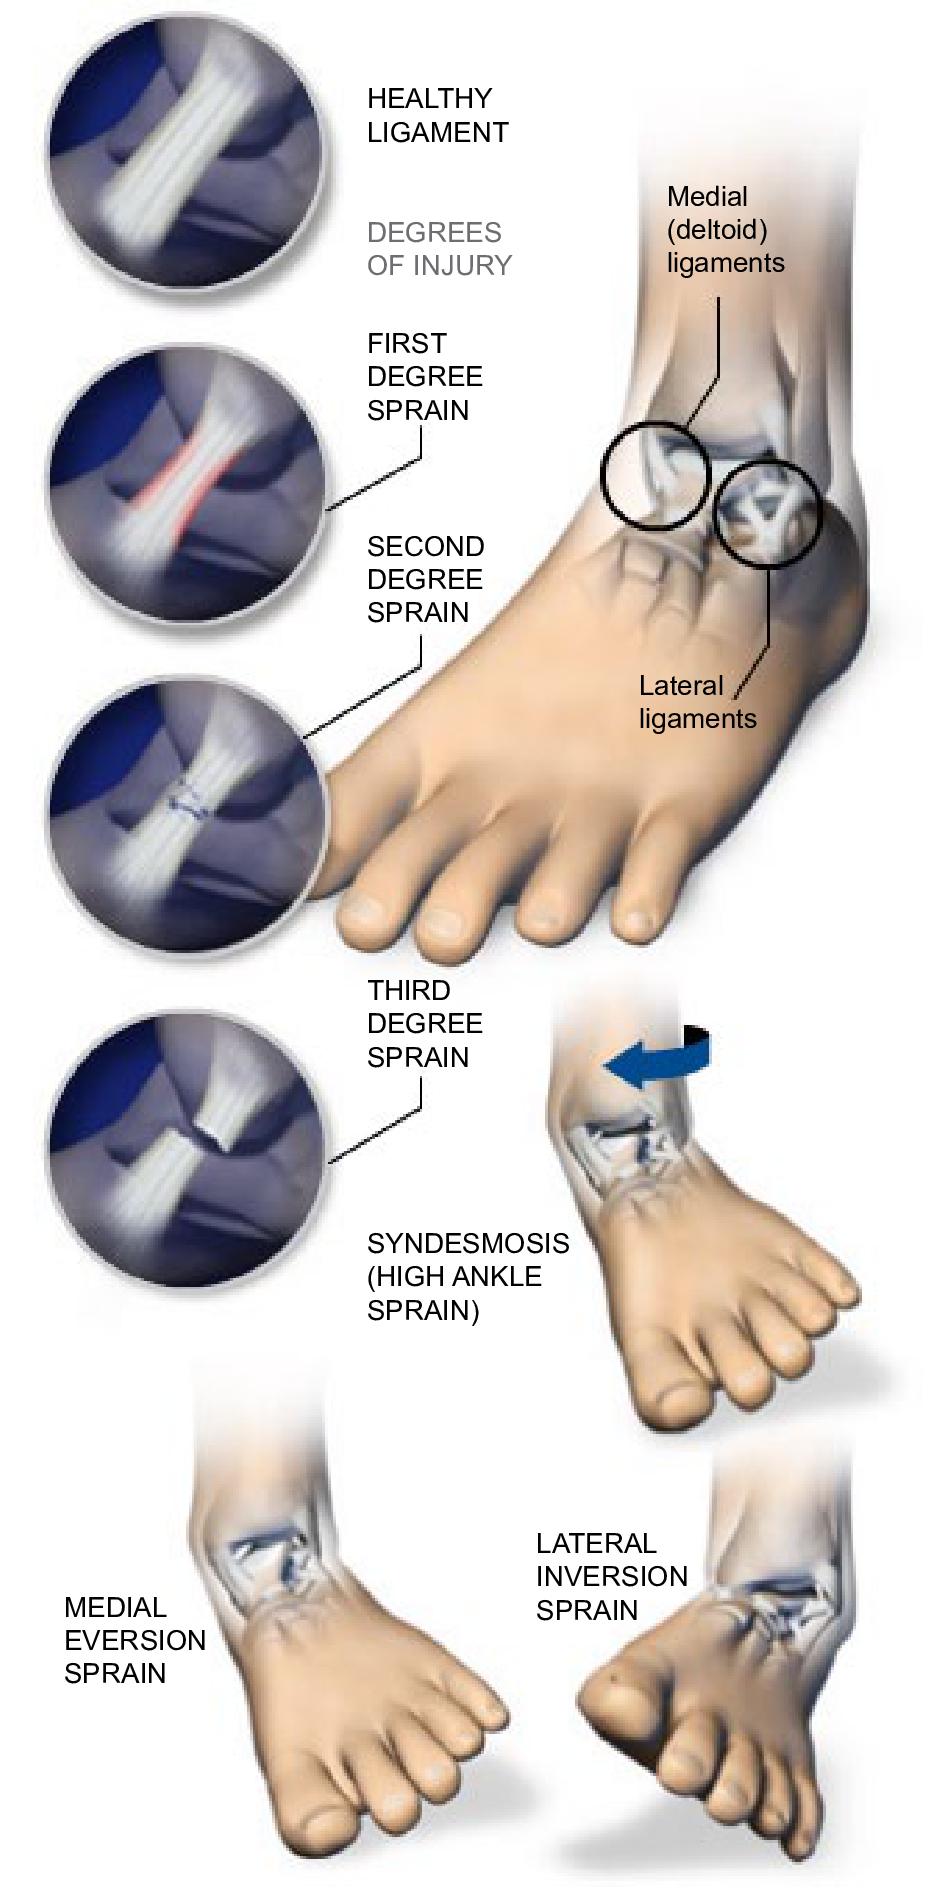 How To Rehab a High Ankle Sprain